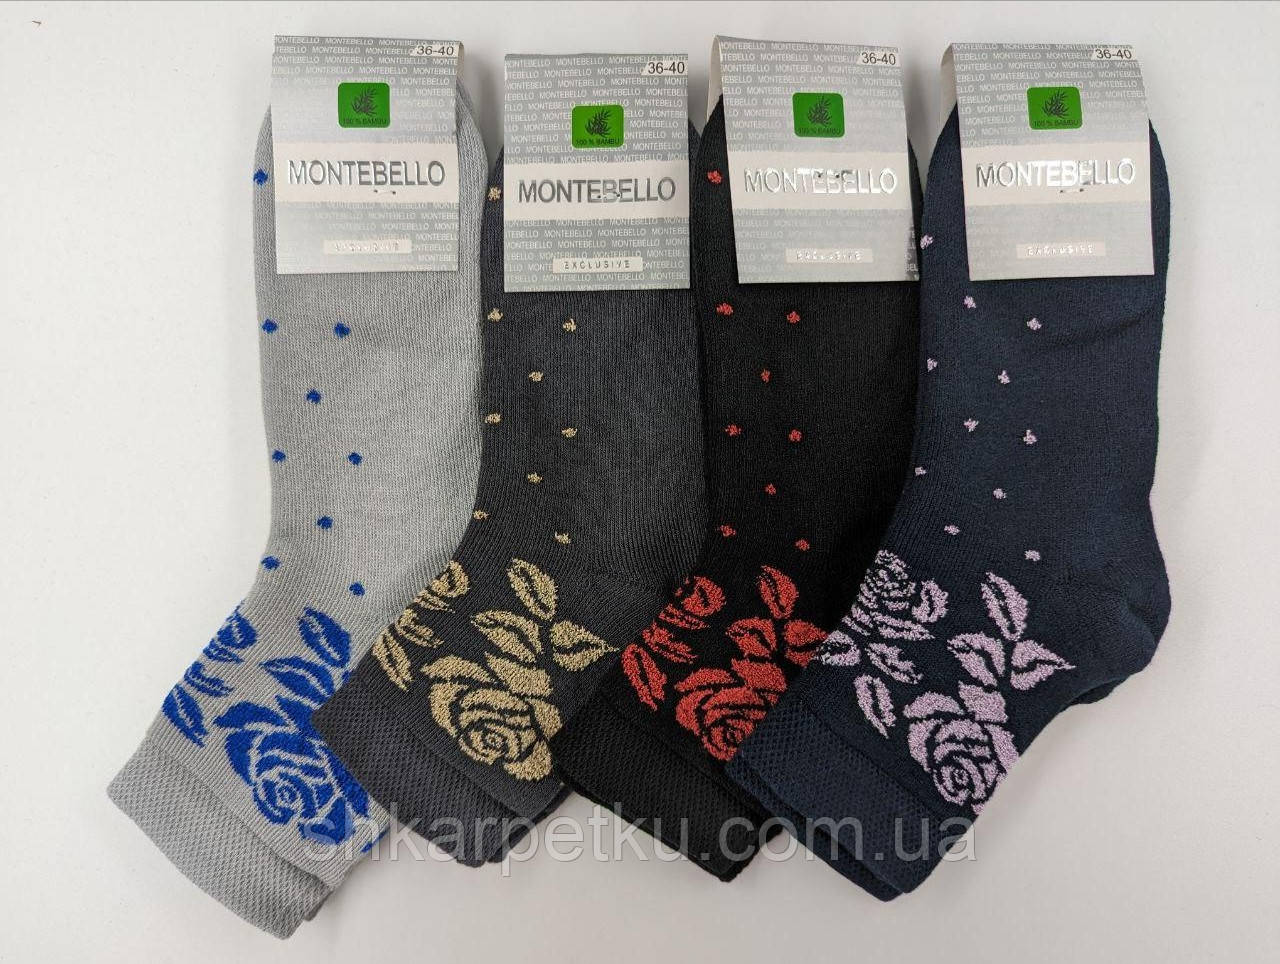 Жіночі махрові шкарпетки теплі Montebello з принтом троянди розмір 36-40 мікс кольорів 12 пар/уп